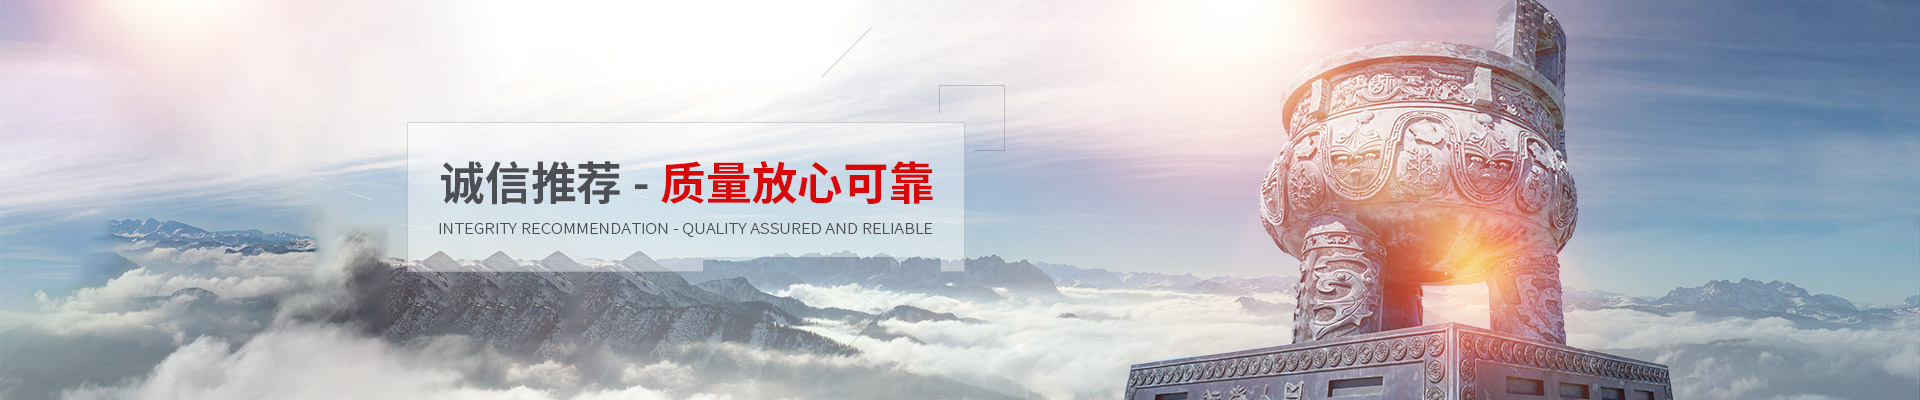 上海永健仪器设备有限公司公司介绍